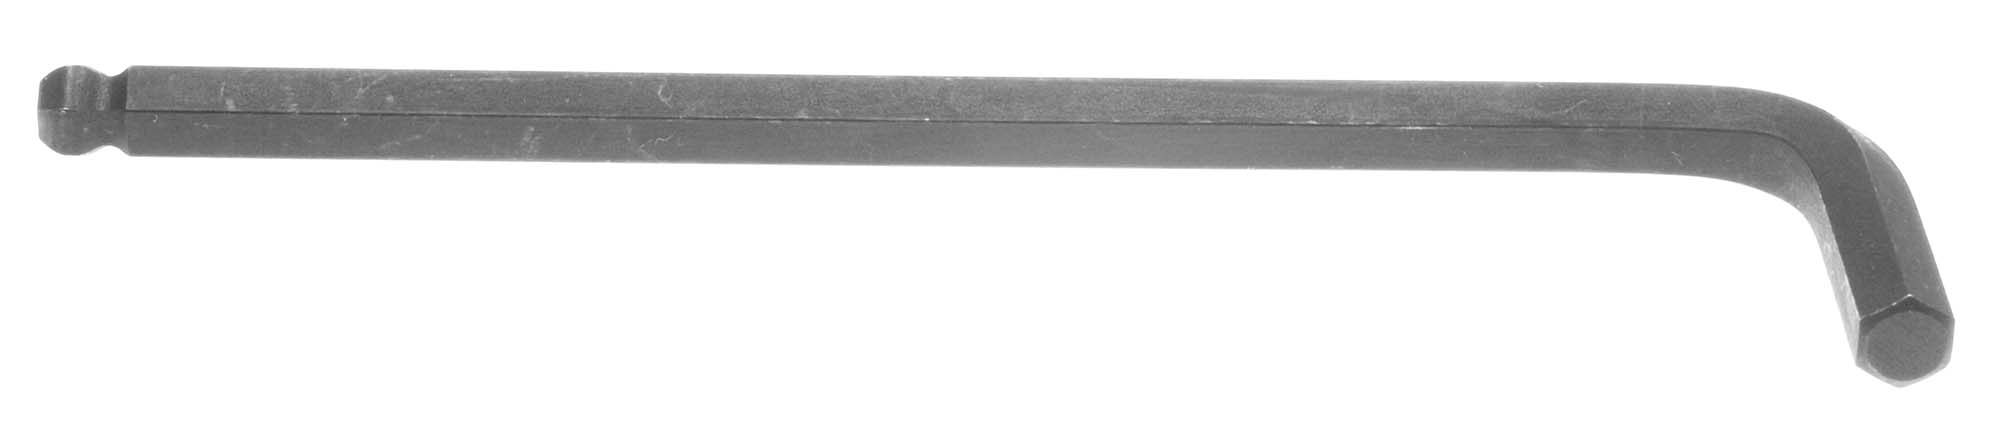 9/64" Bondhus Balldriver L-Wrench Hex Key